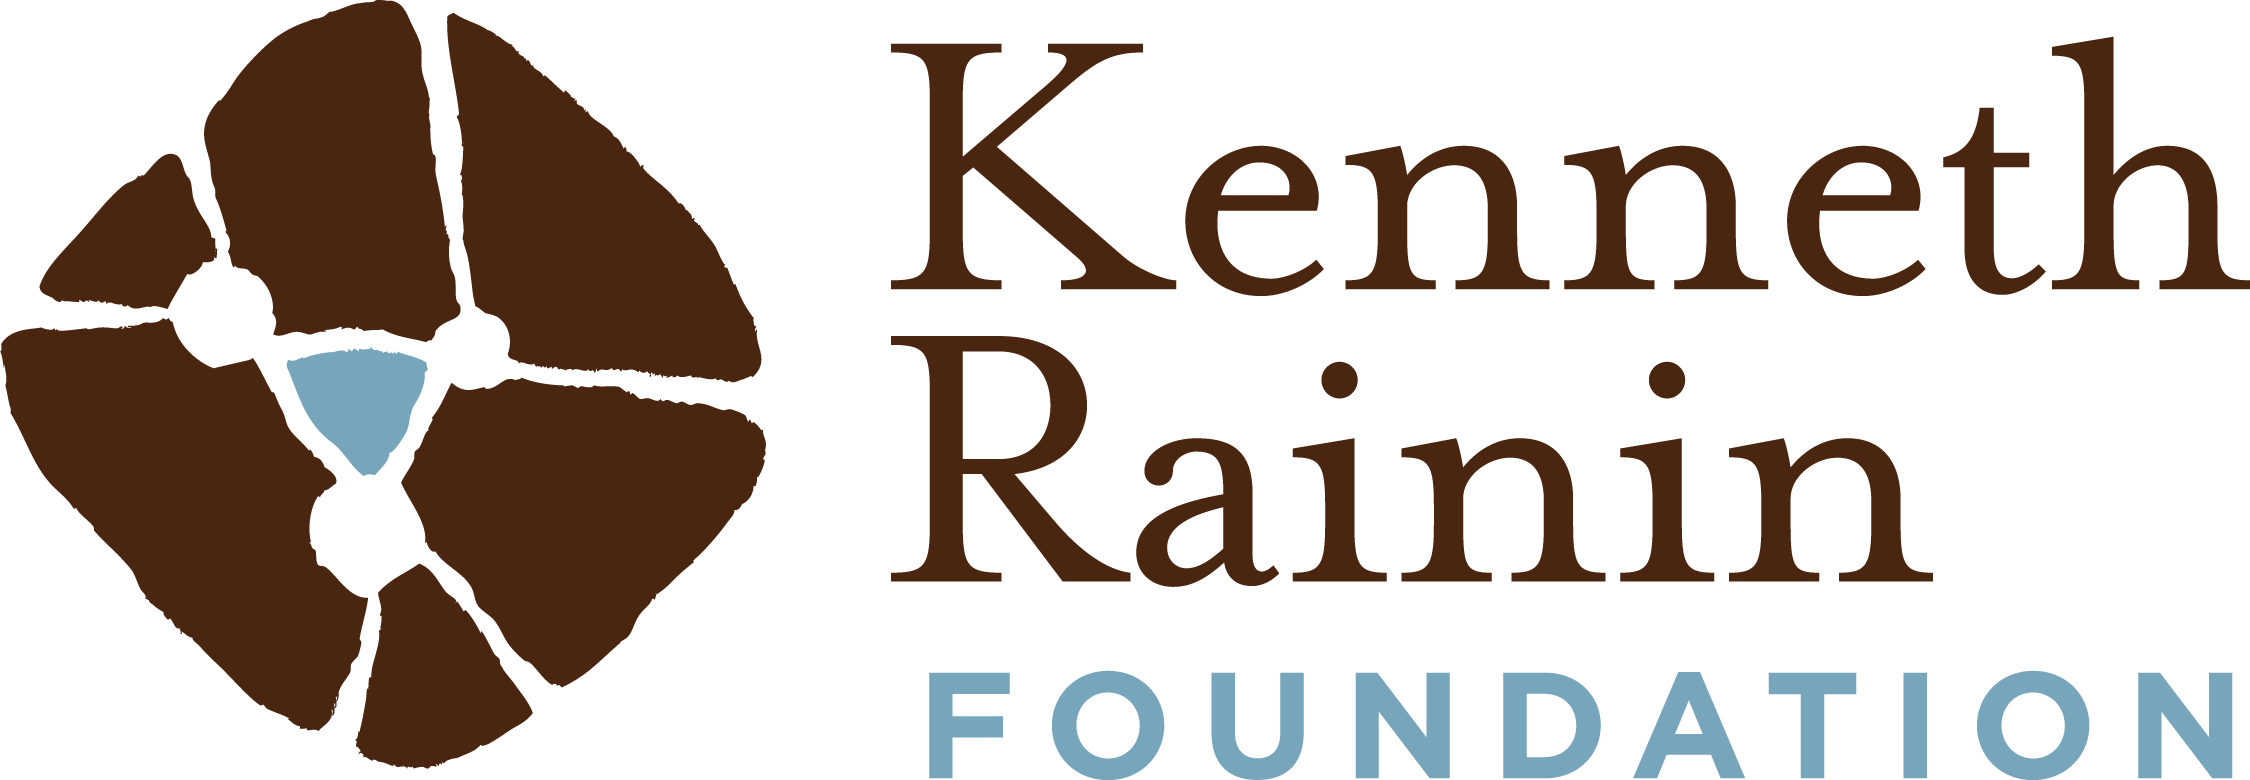 Kenneth Rainin Foundation